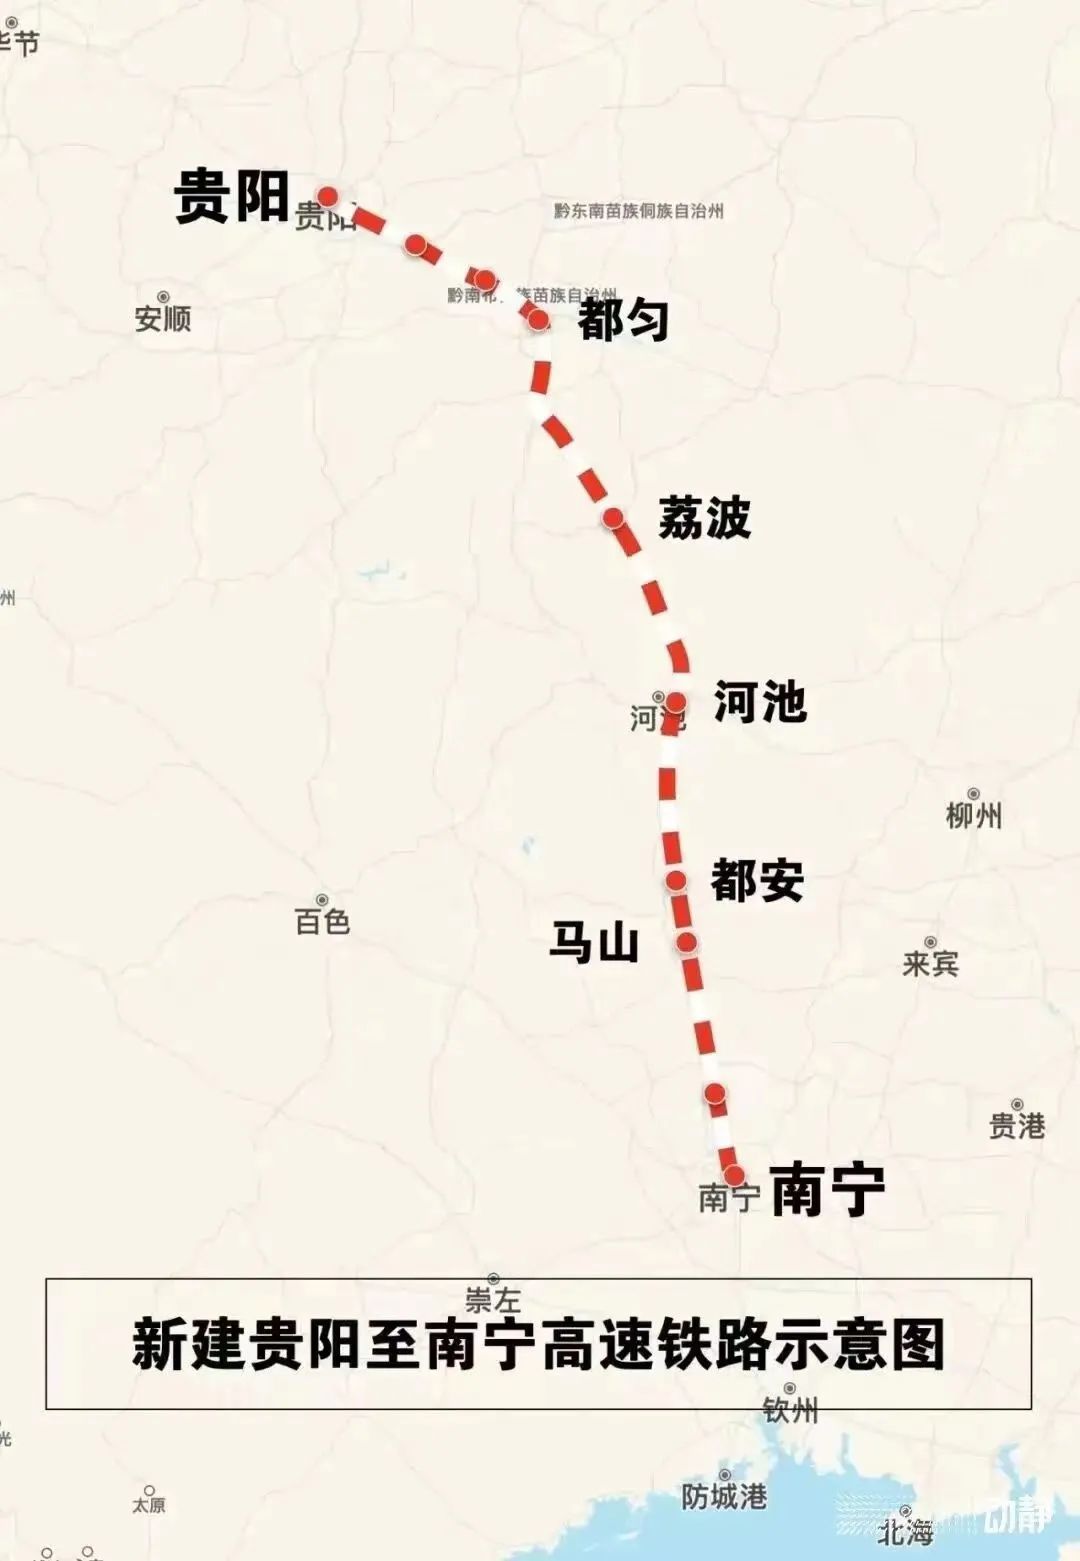 【专题】坐着高铁看中国-新闻频道-长城网